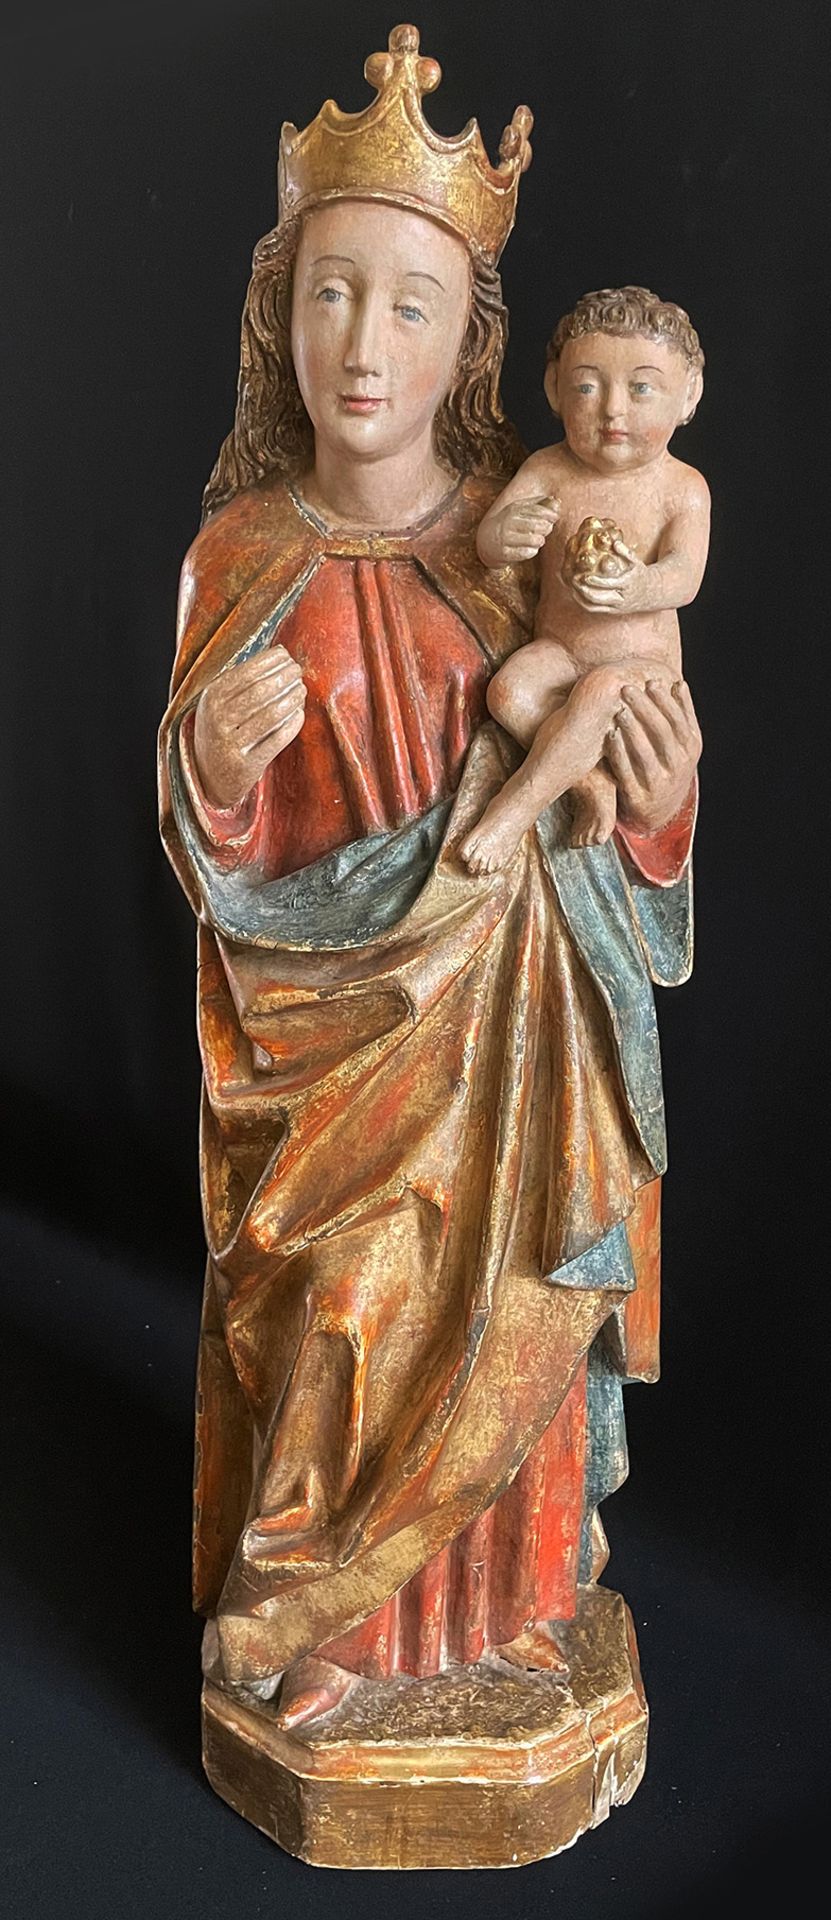 Gotische Madonna, 16./17. Jh., Holz, farbig gefasst, die Gesichtszüge der Maria eventuell